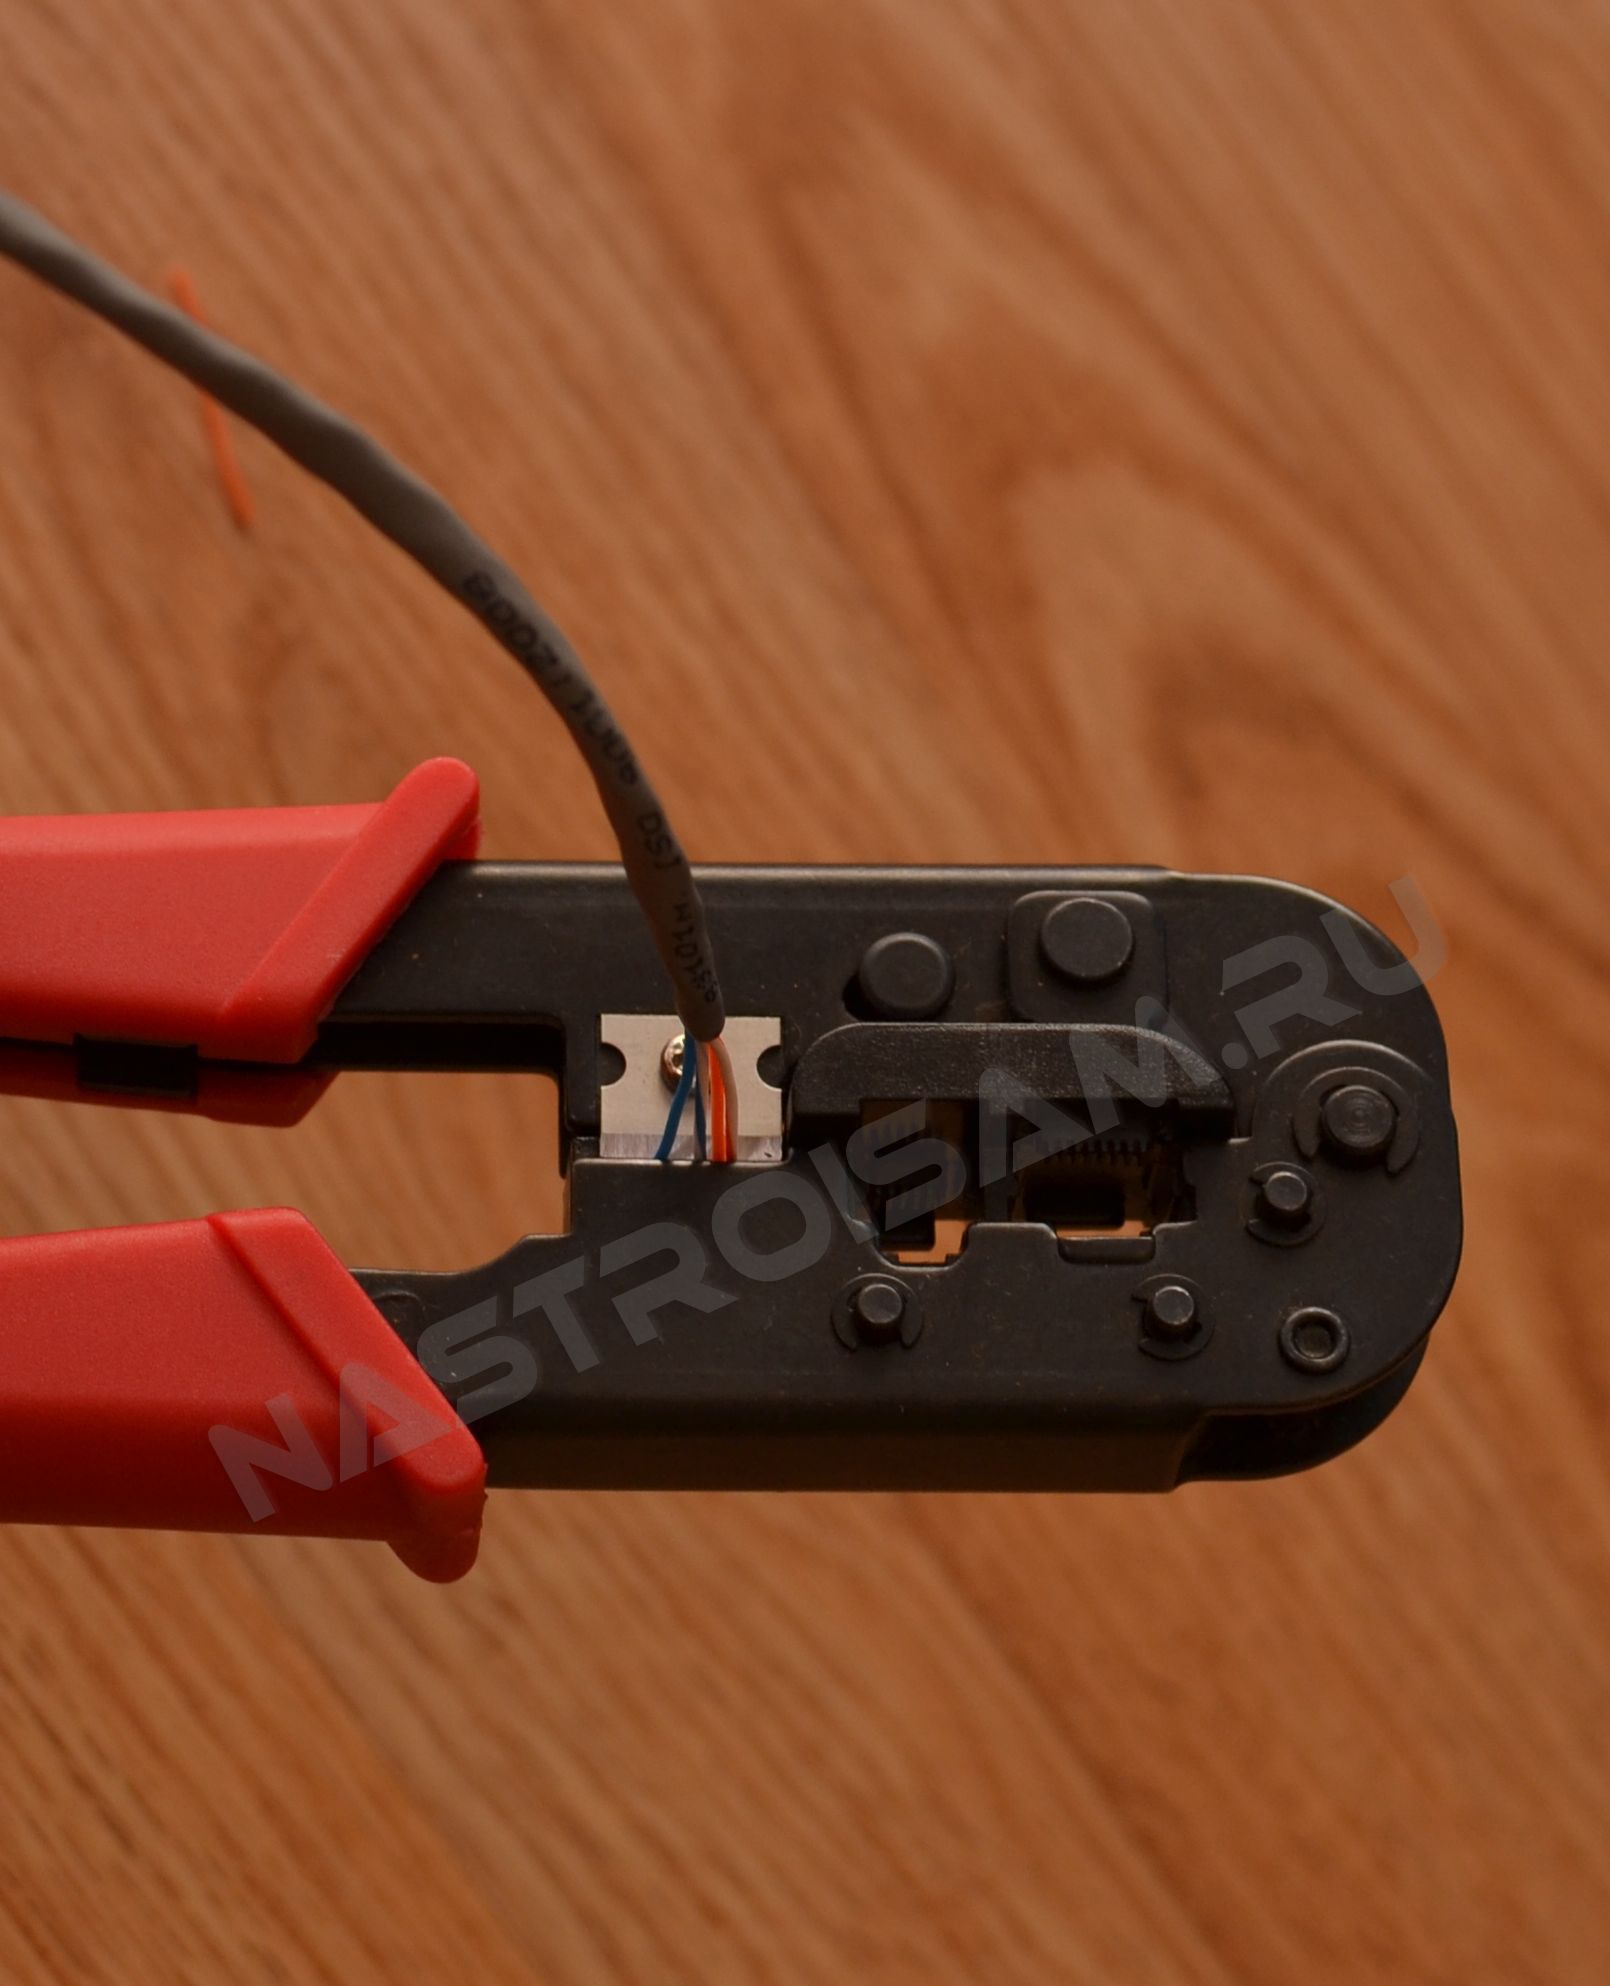 Efter montering skal du trimme overskydende længde af ledningerne: